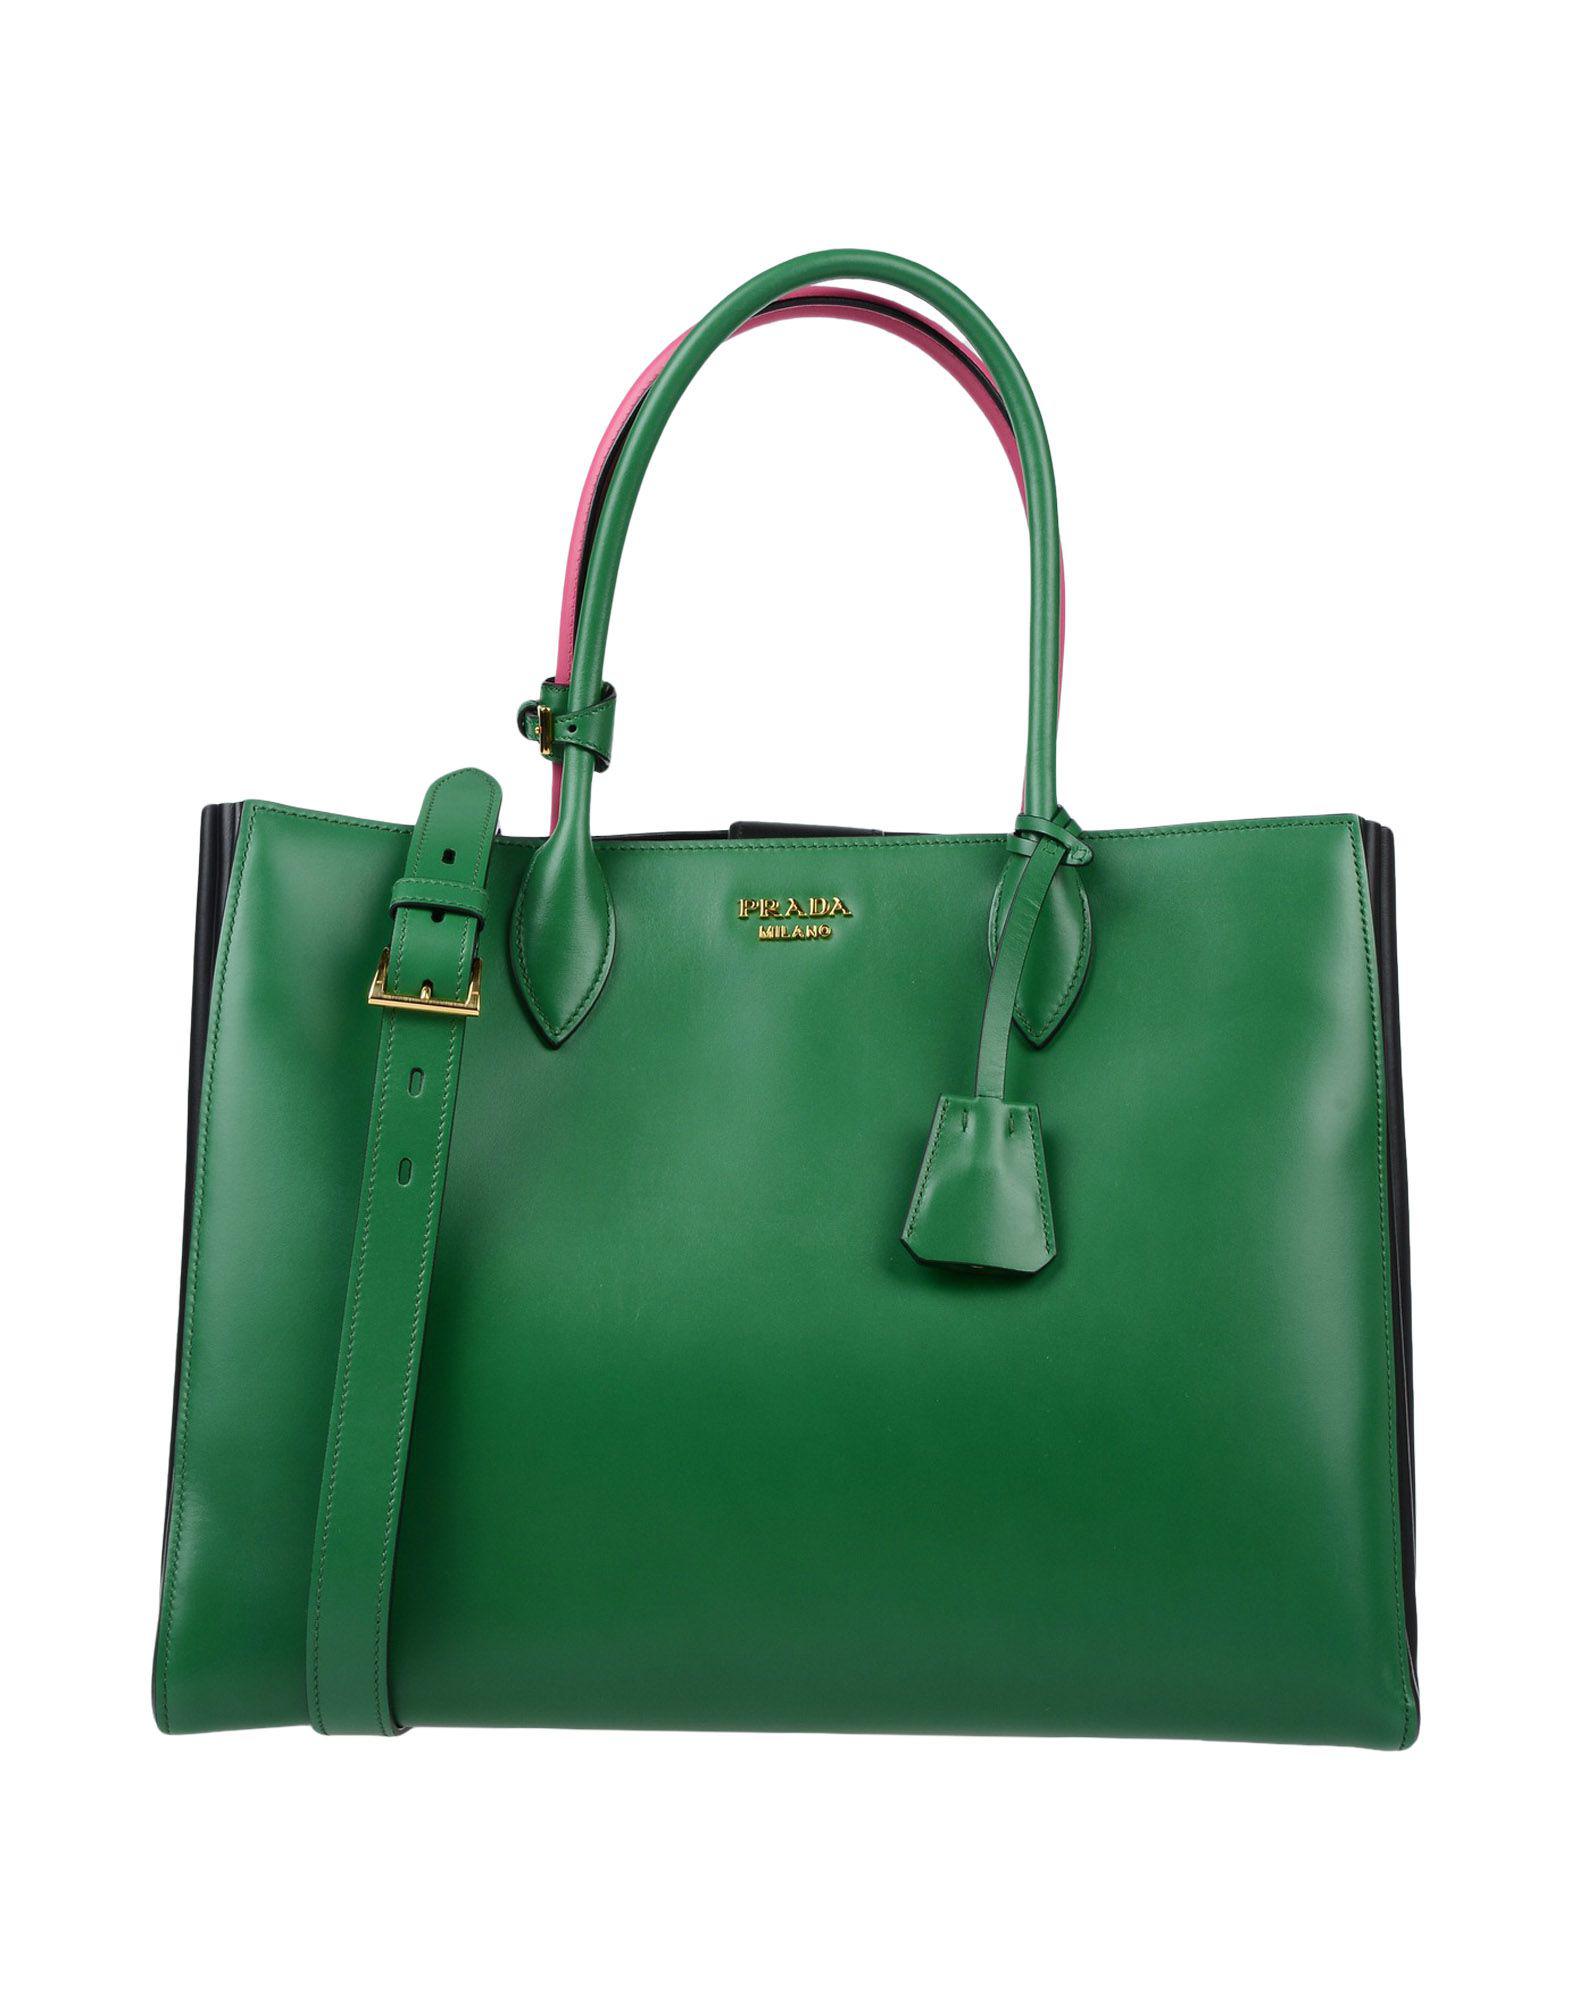 Prada Handbag in Green - Lyst